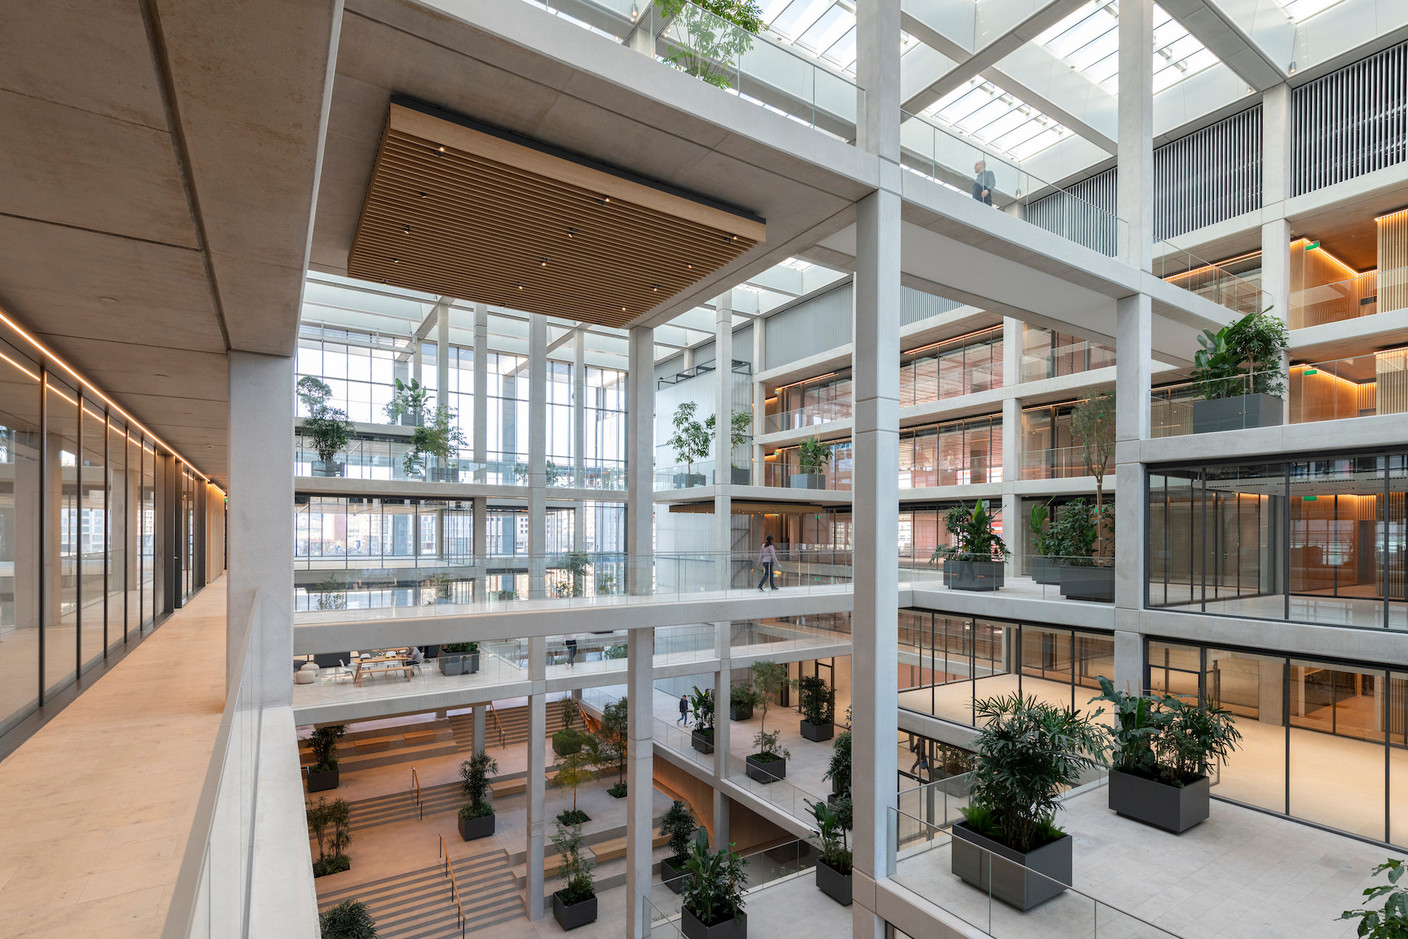 Dans l’atrium, on trouve des espaces ouverts qui servent d’espace de travail plus informel. (Photo: Nigel Young/Foster + Partners)